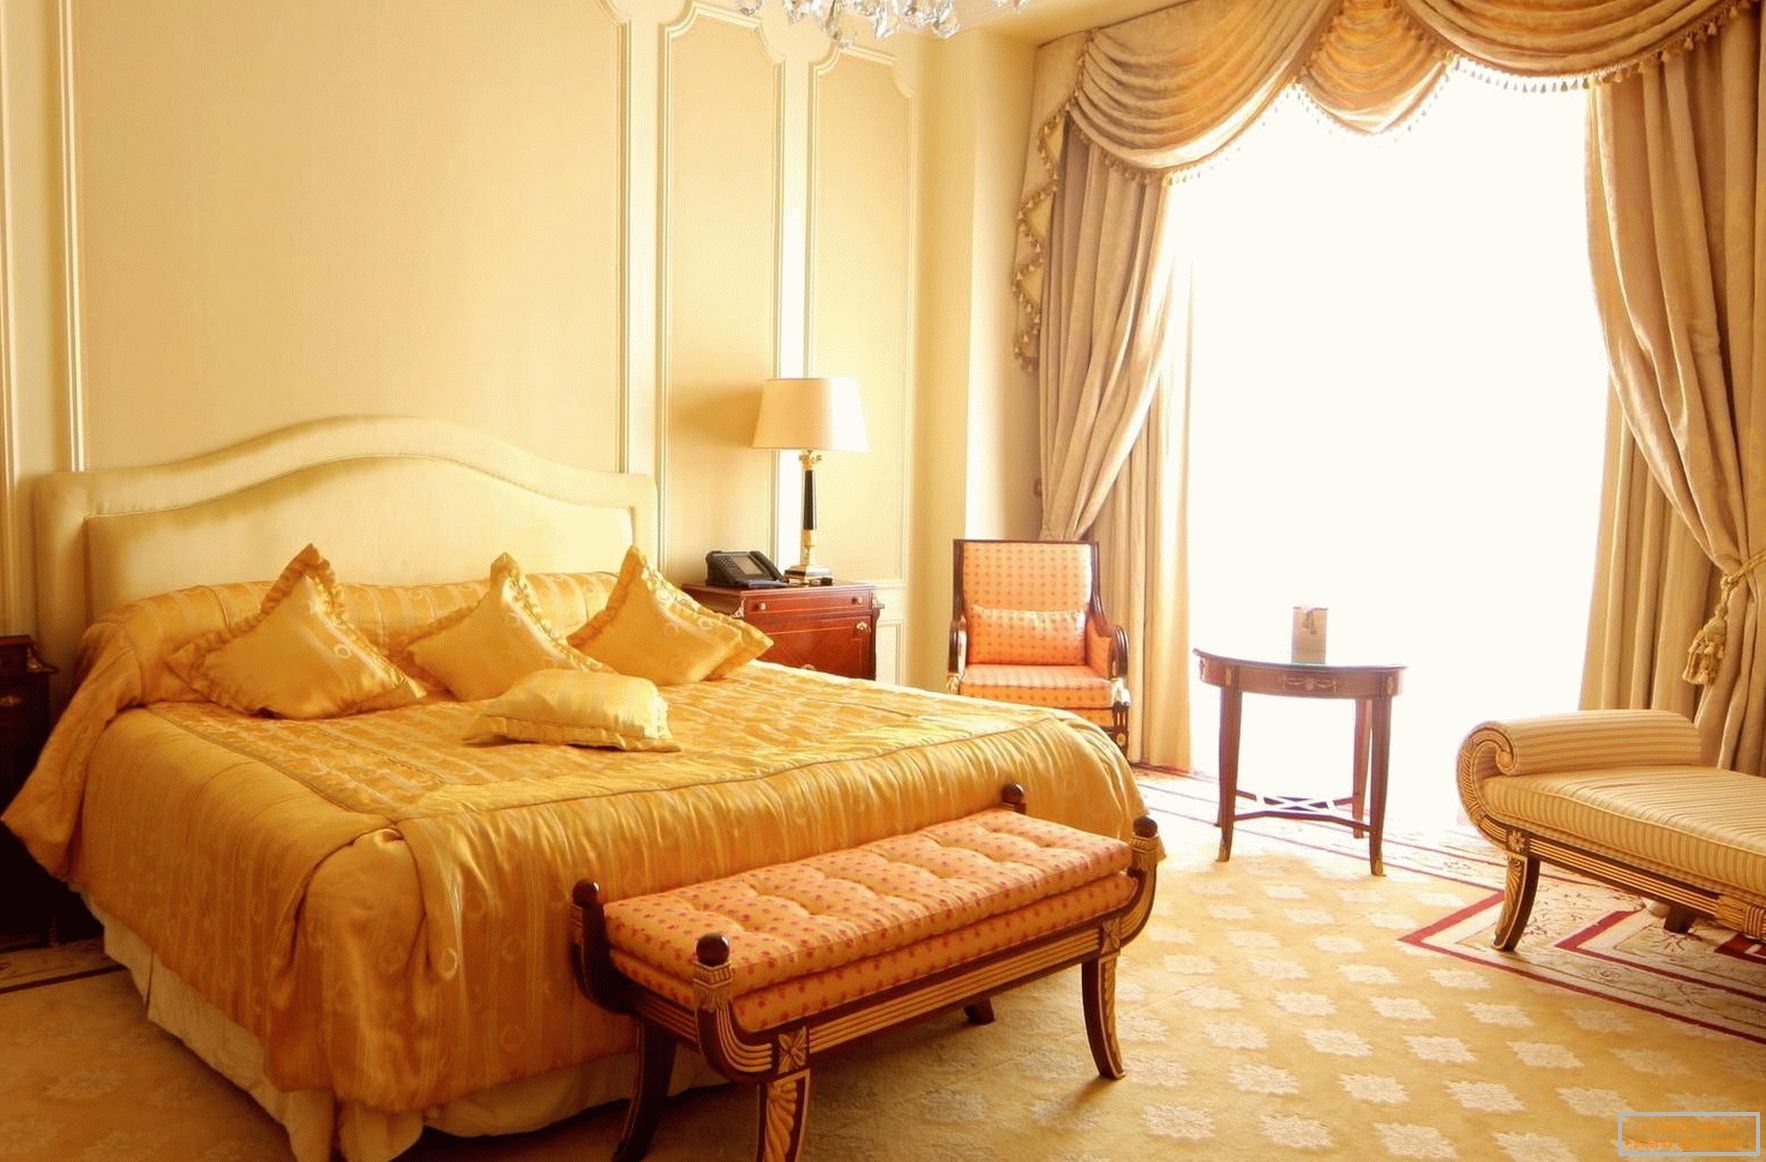 Luminosa e spaziosa camera da letto in stile barocco con finestre panoramiche. 